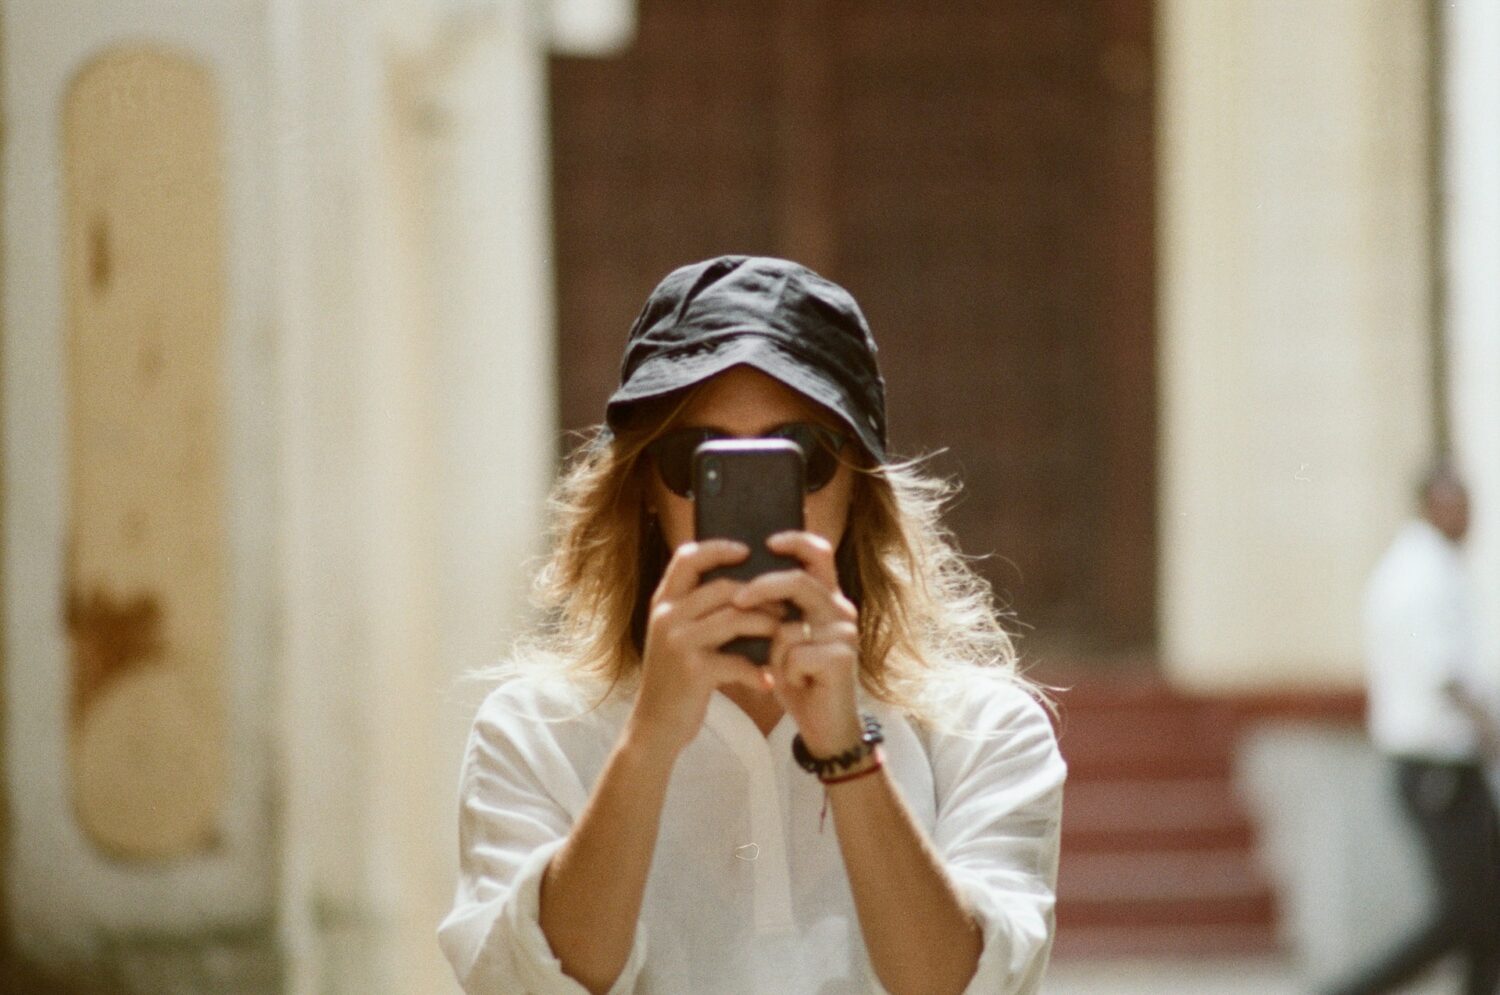 Uma mulher branca de cabelo longos em tons de castanho claro, com um chapéu preto, uma camisa de botões branco, segurando um celular na vertical, para representar chip celular Zanzibar